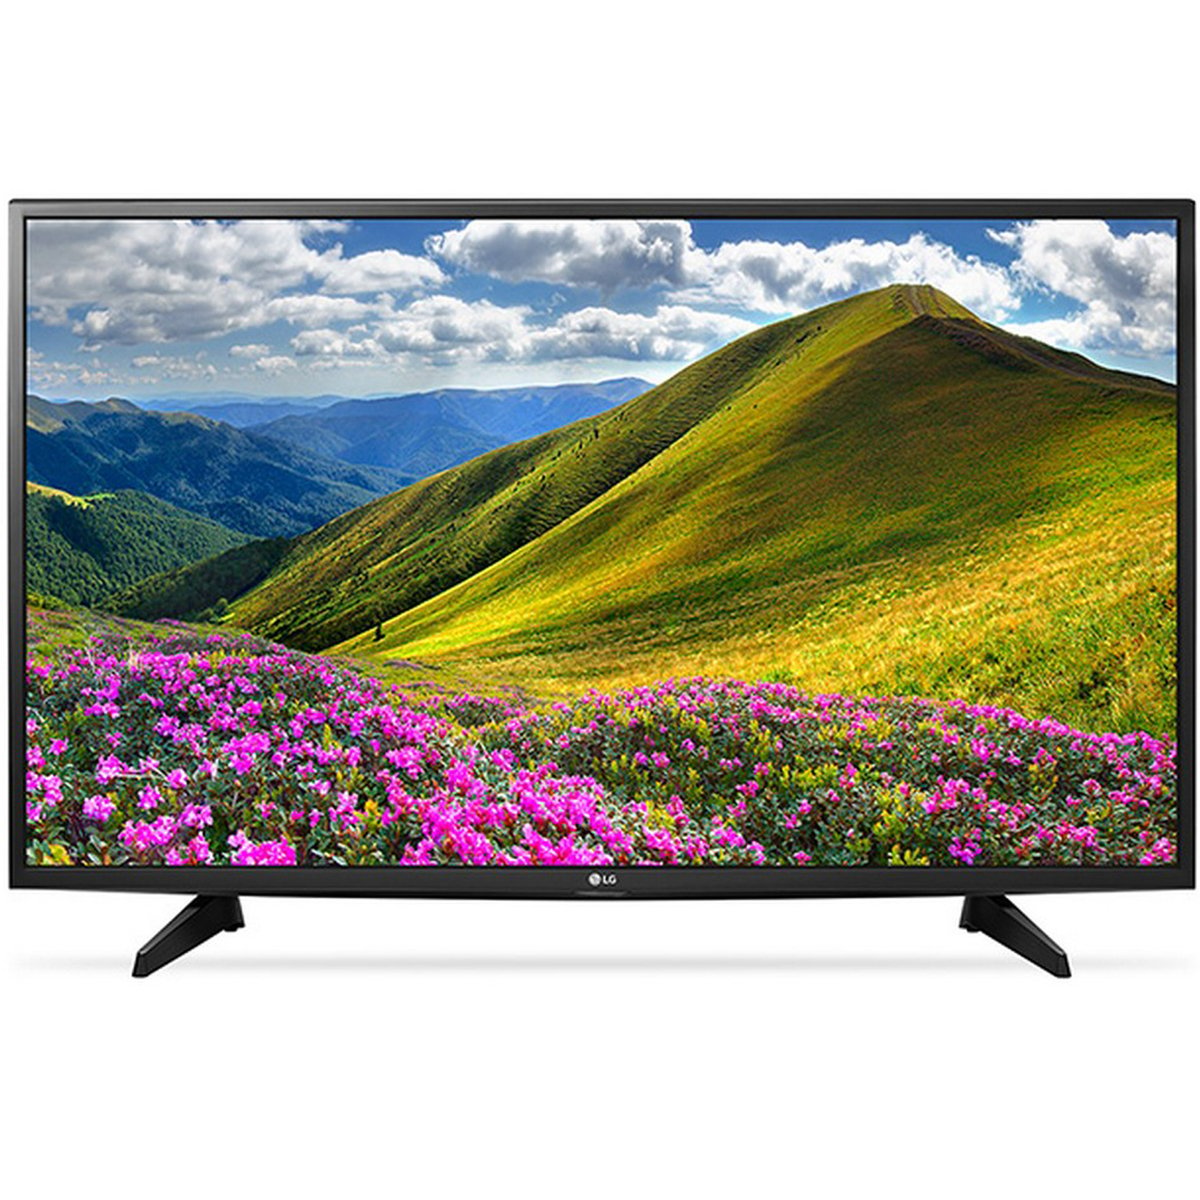 LG Full HD LED TV 43LJ510V 43inch